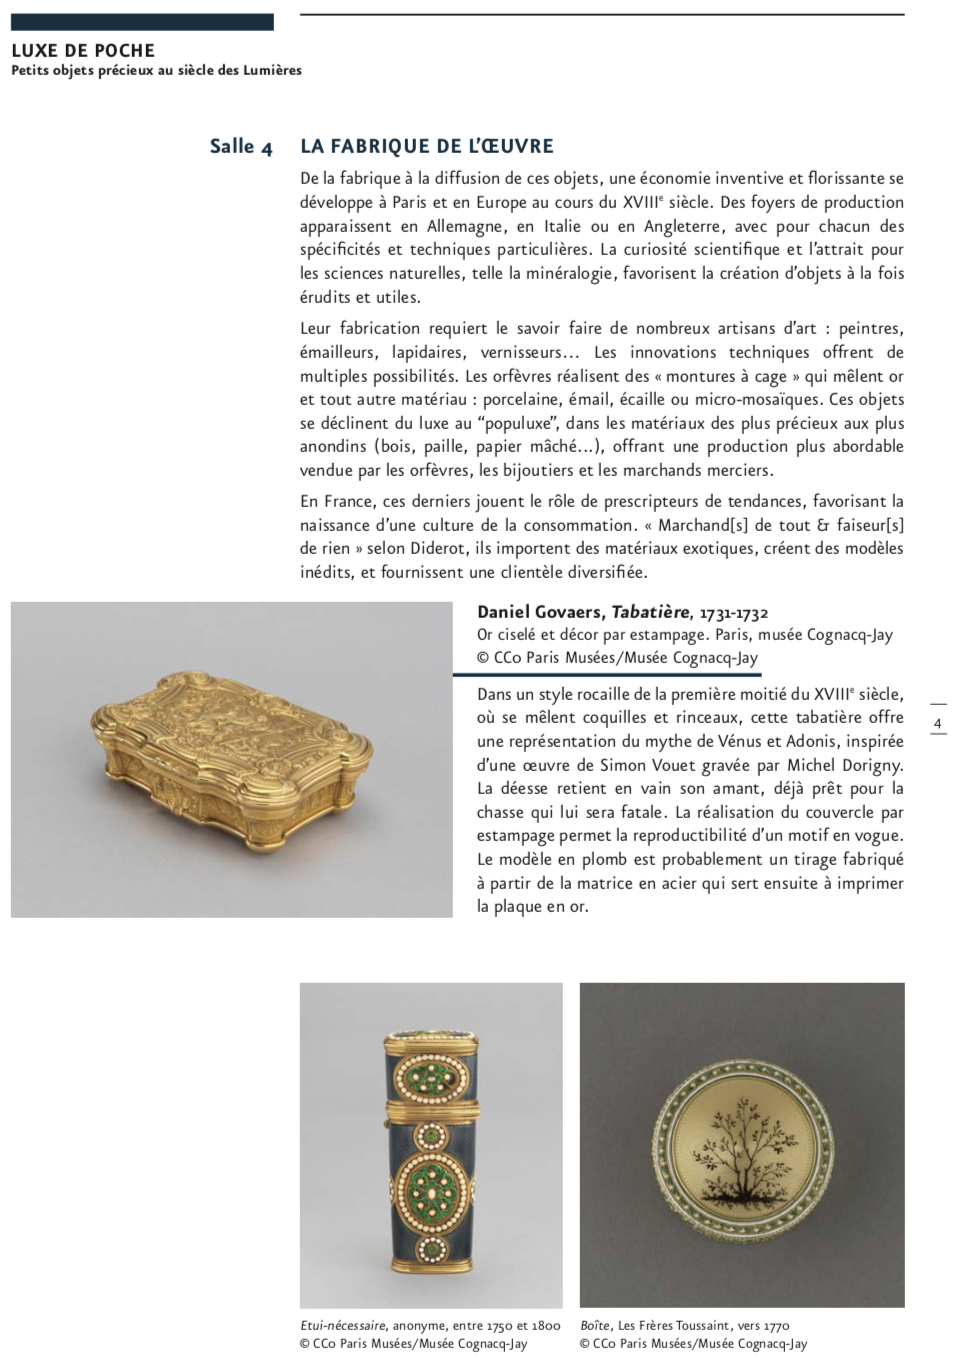 Exposition : Luxe de poche - Petits objets précieux au siècle des Lumières. Musée Cognacq-Jay Capt5773